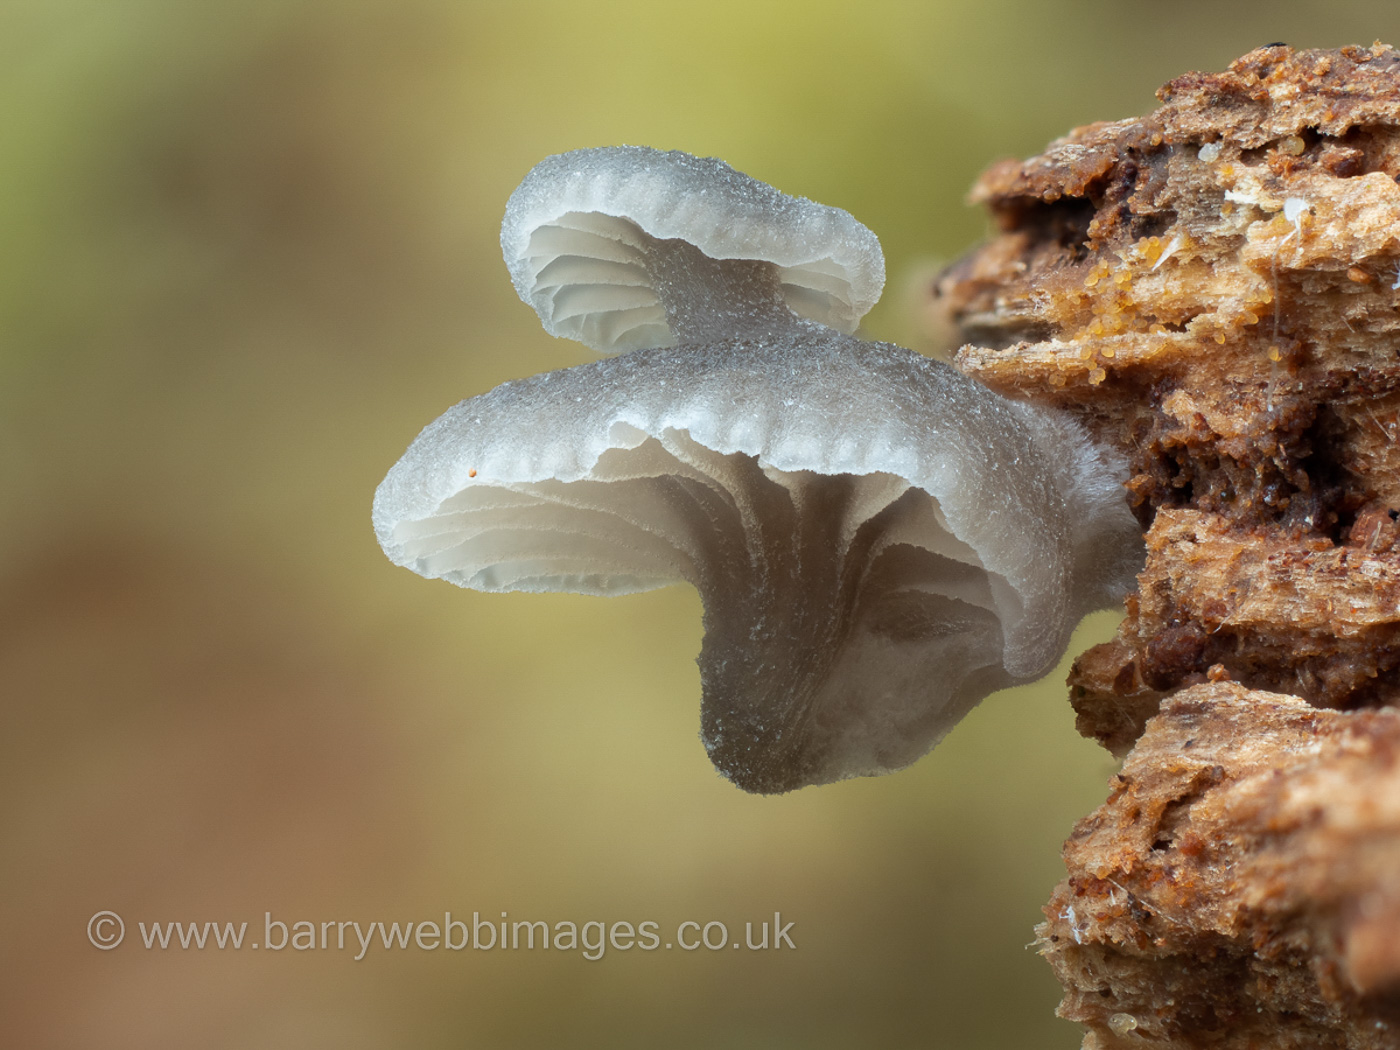 Hemimycena delicatula by Barry Webb